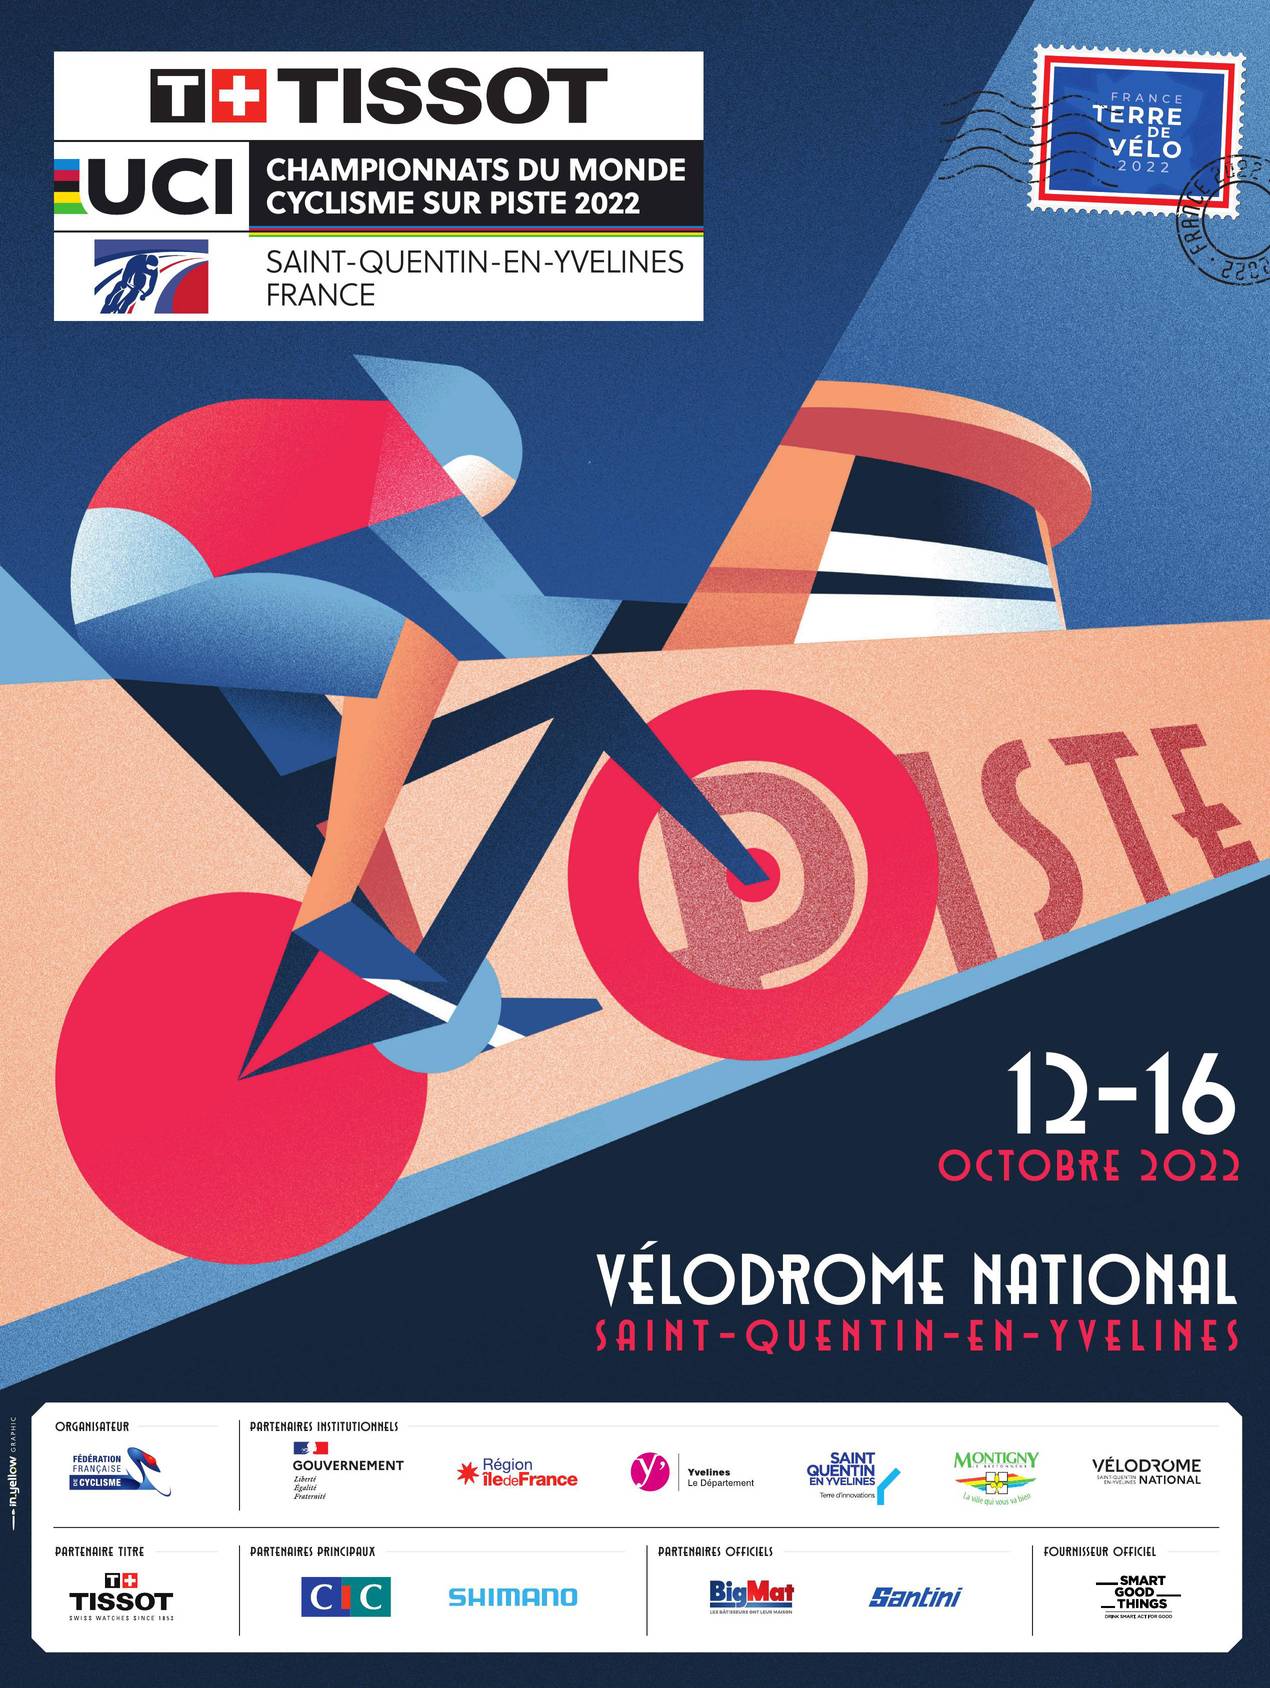 Championnats du Monde Piste UCI Tissot du 12 au 16 octobre